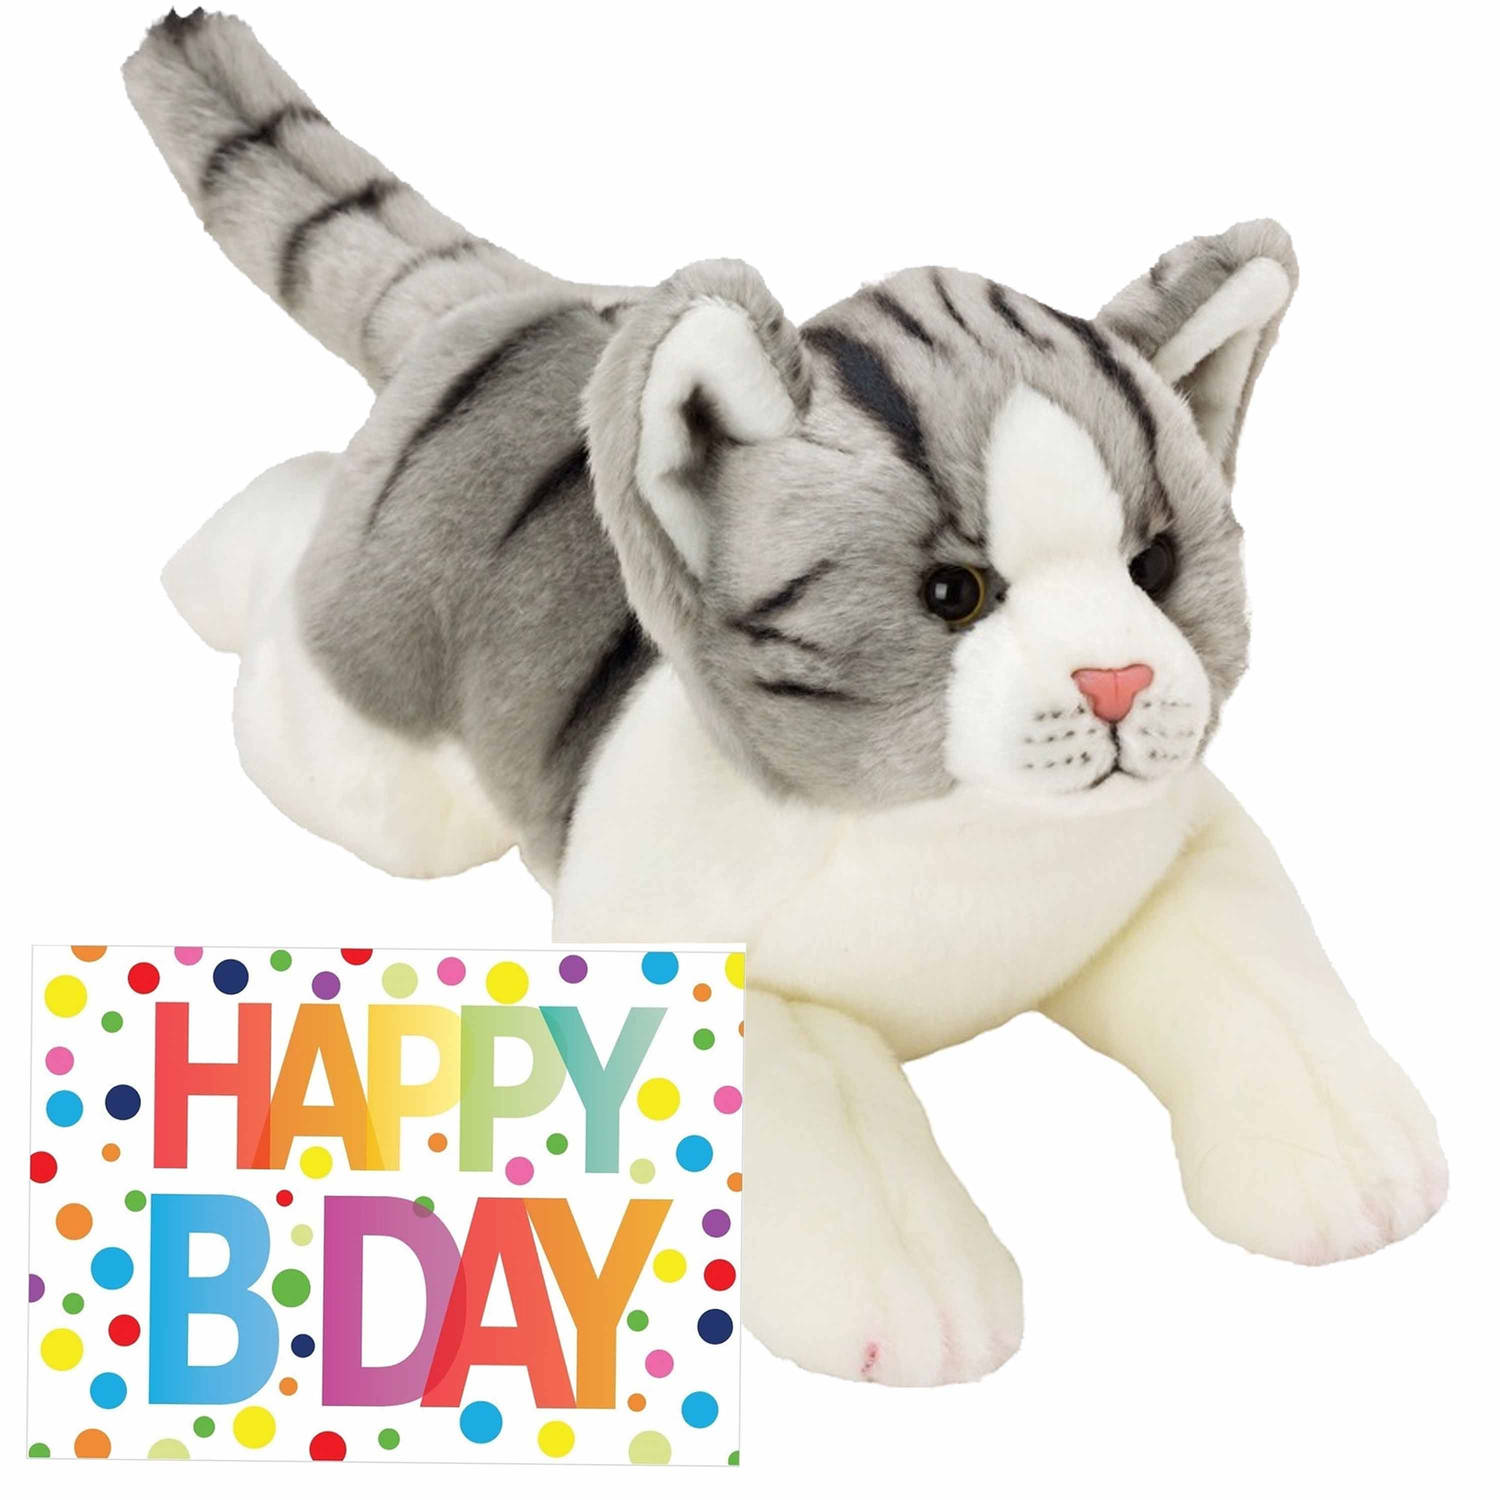 Pluche knuffel grijs-witte kat-poes 33 met A5-size Happy Birthday wenskaart Knuffel huisdieren